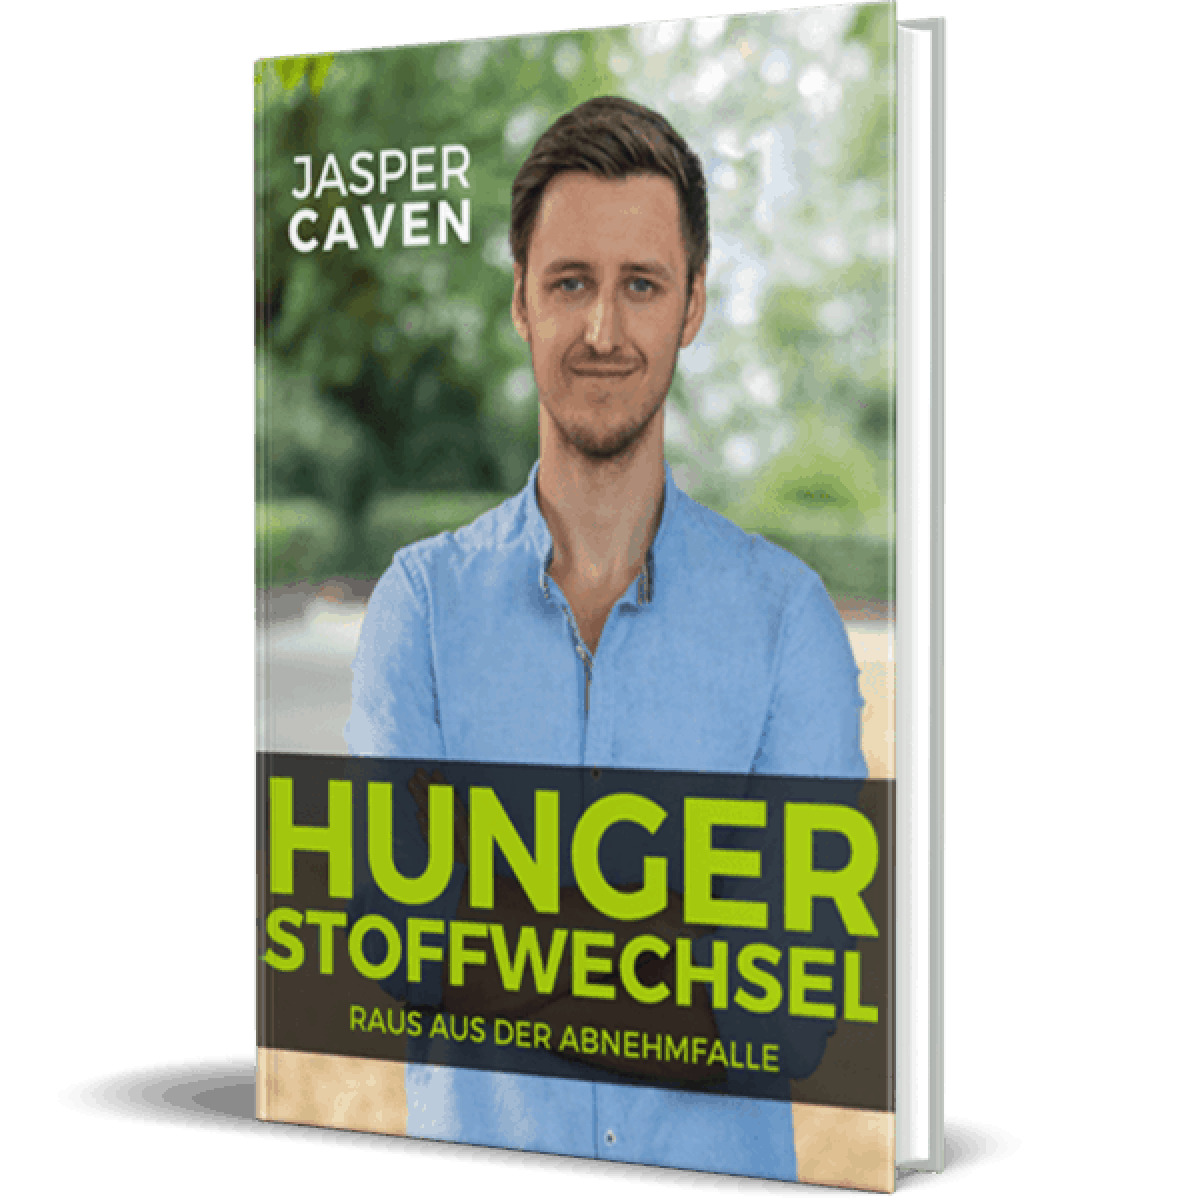 Hungerstoffwechsel Buch Erfahrungen Jasper Caven